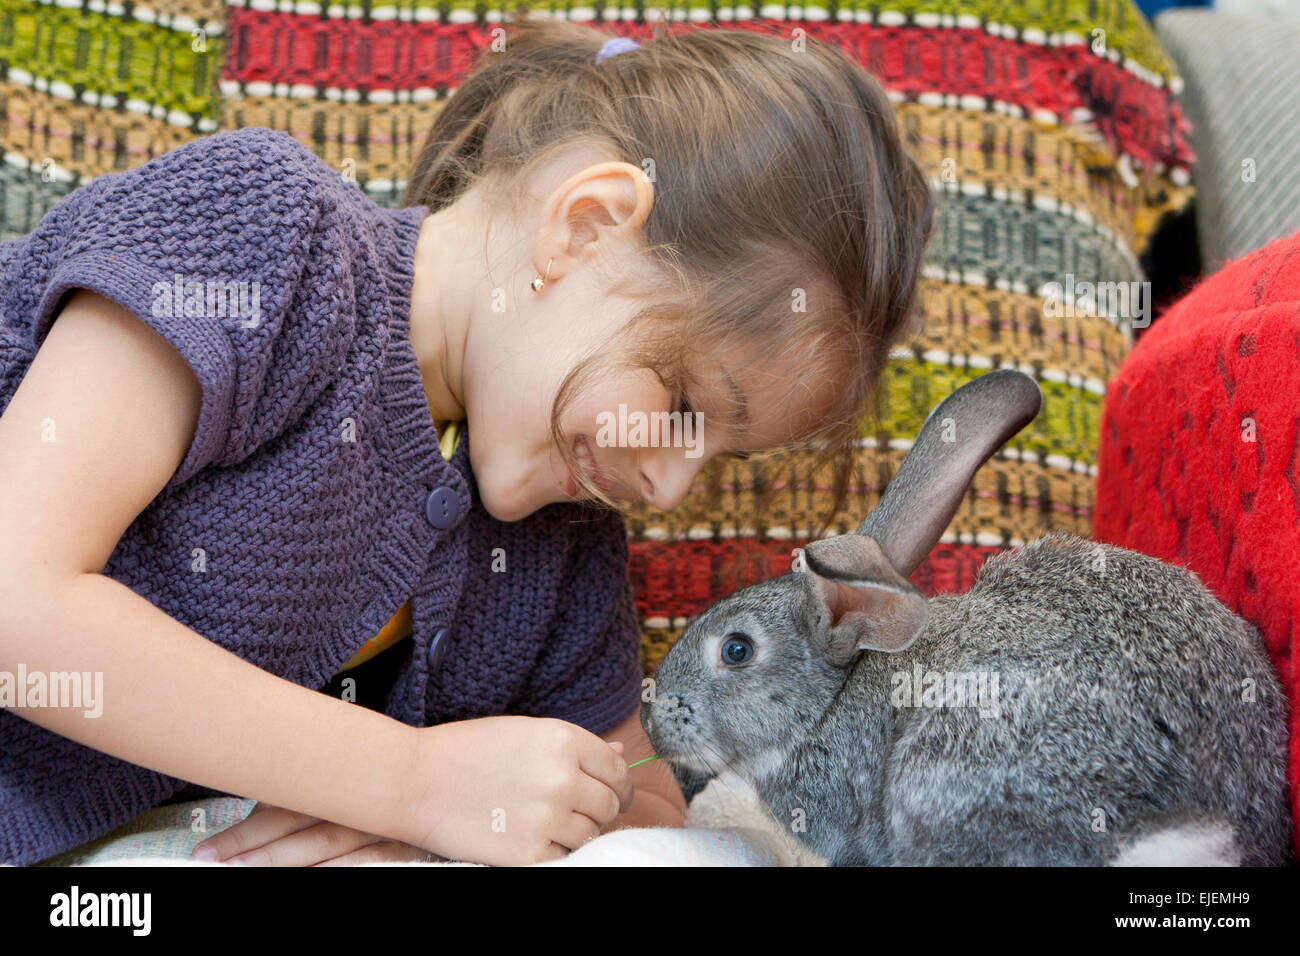 Ragazza carina alimentare un piccolo coniglietto grigio Foto Stock